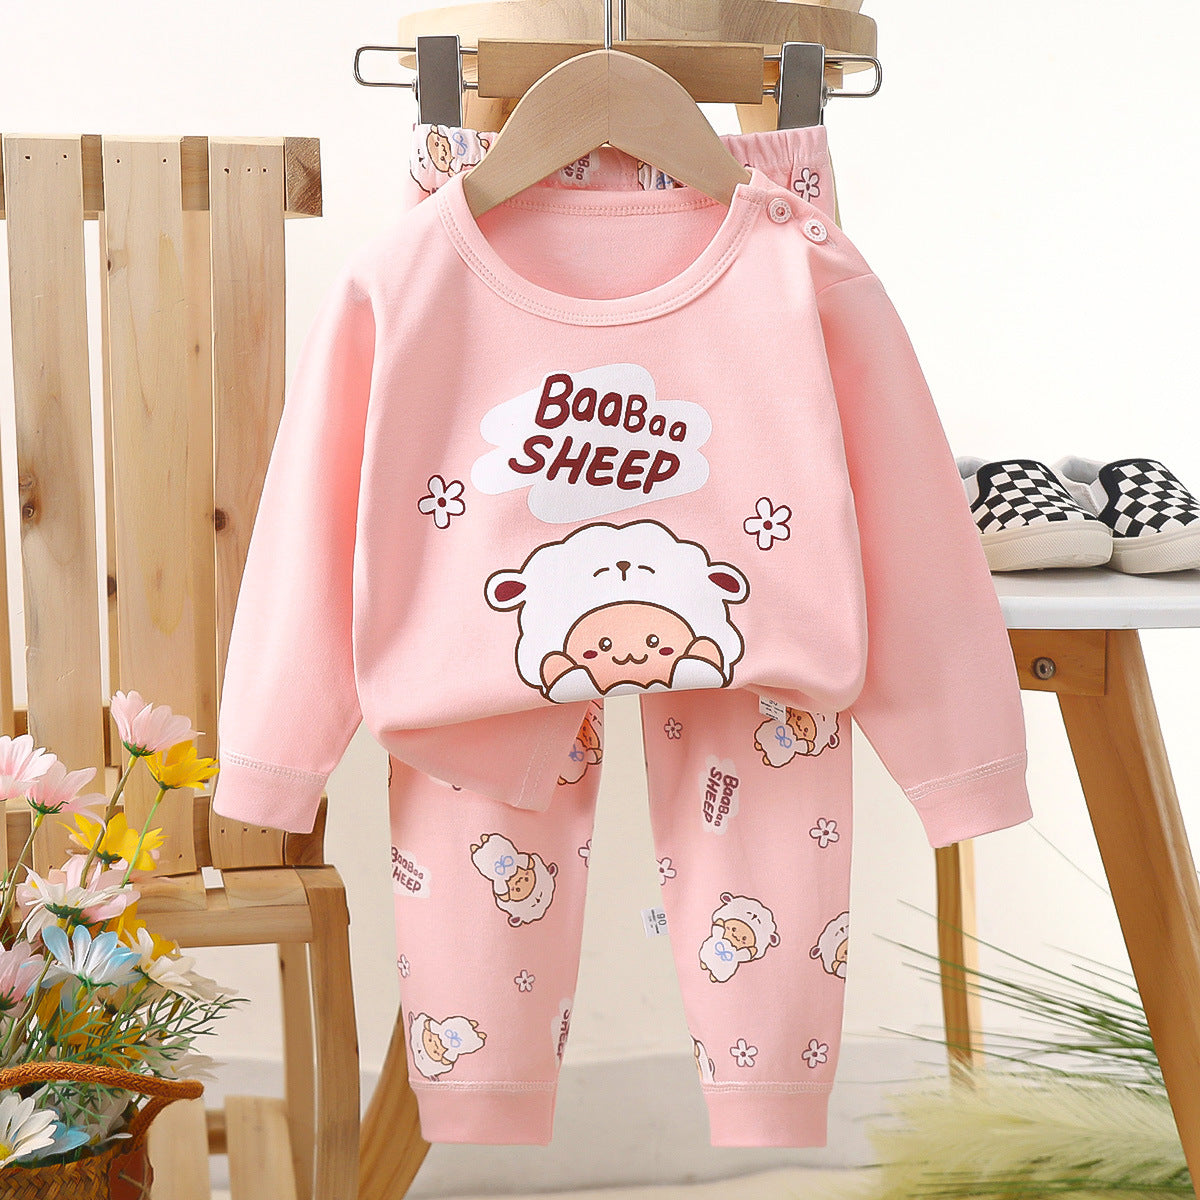 [703120] - Baju Tidur Setelan Piyama Fashion Import Anak Perempuan - Motif Boo Sheep